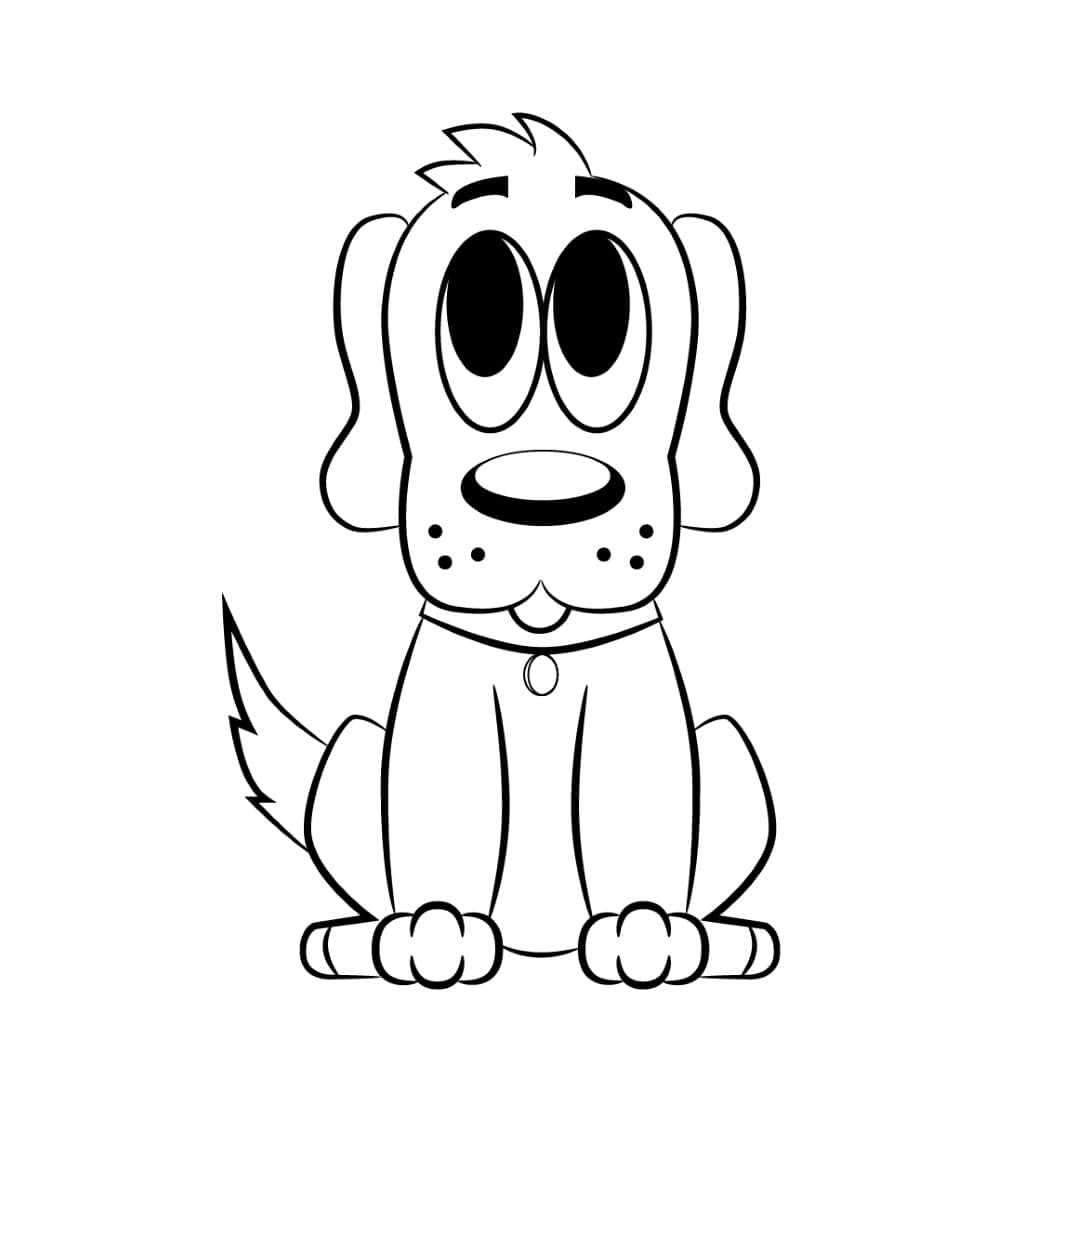 Unapágina Para Colorear De Un Perro De Dibujos Animados